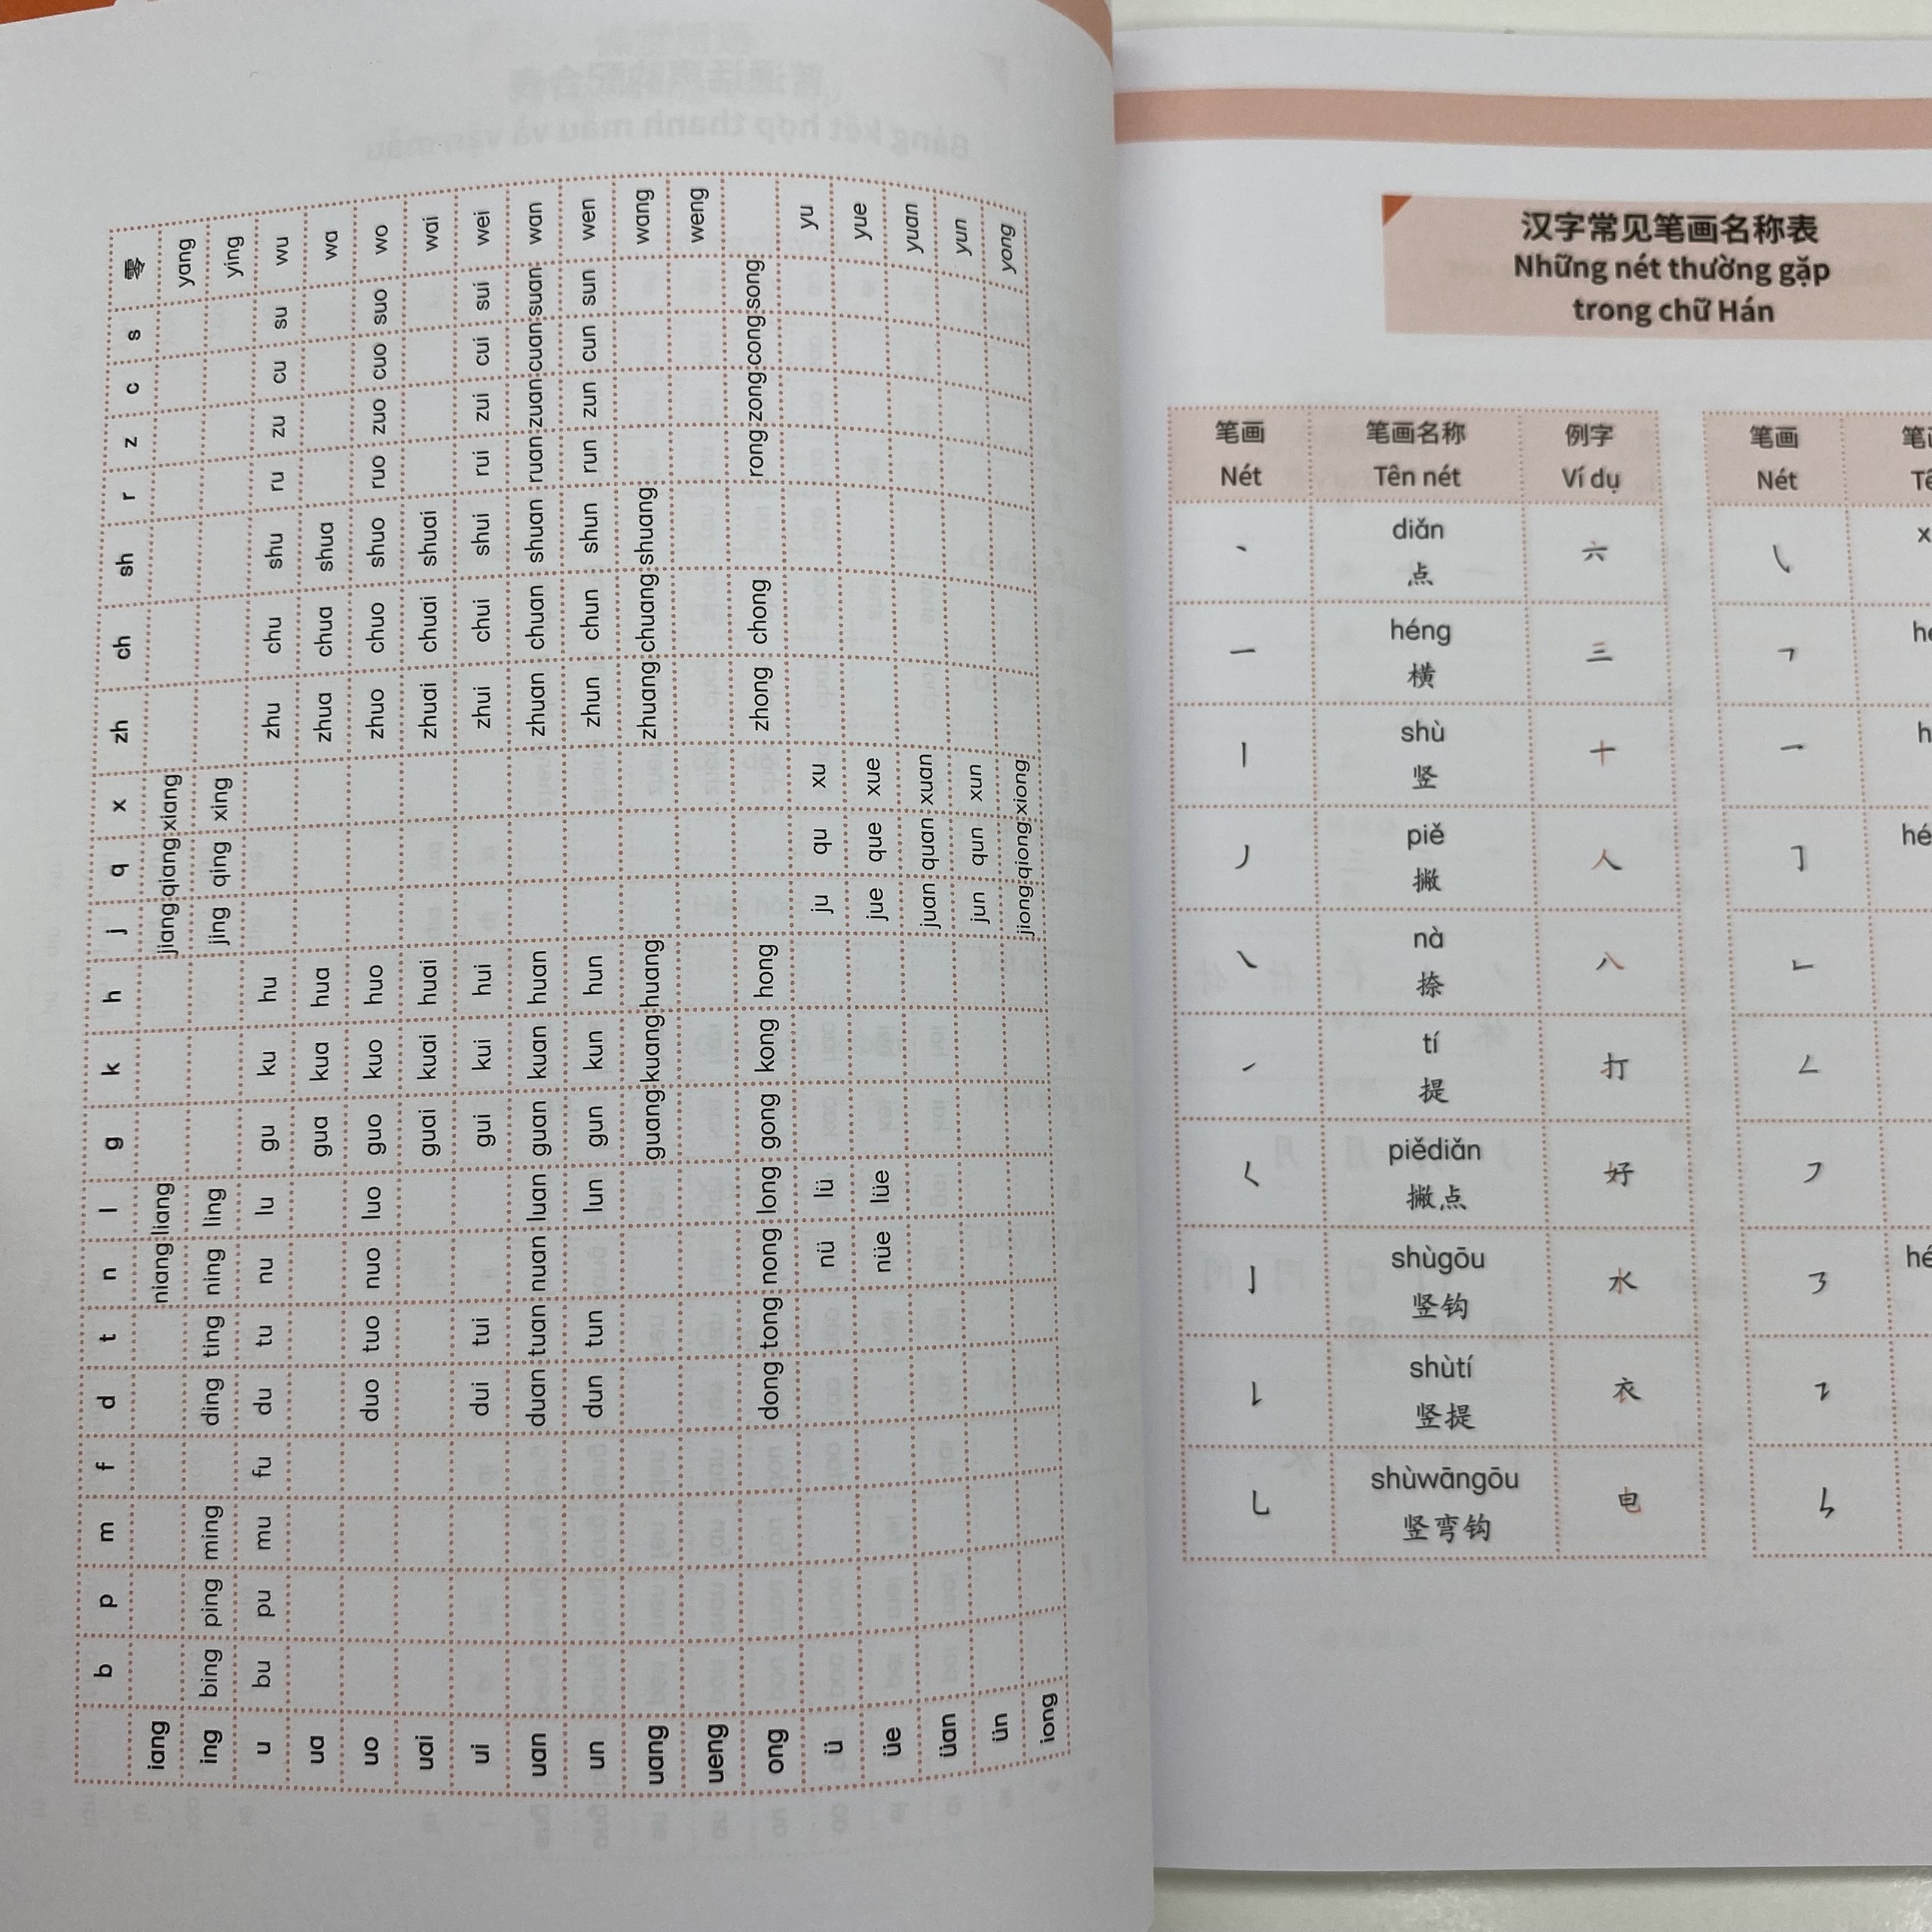 Hình ảnh Sách giáo trình hán ngữ MSUTONG quyển 1 tự học tiếng Hoa cho người mới bắt đầu